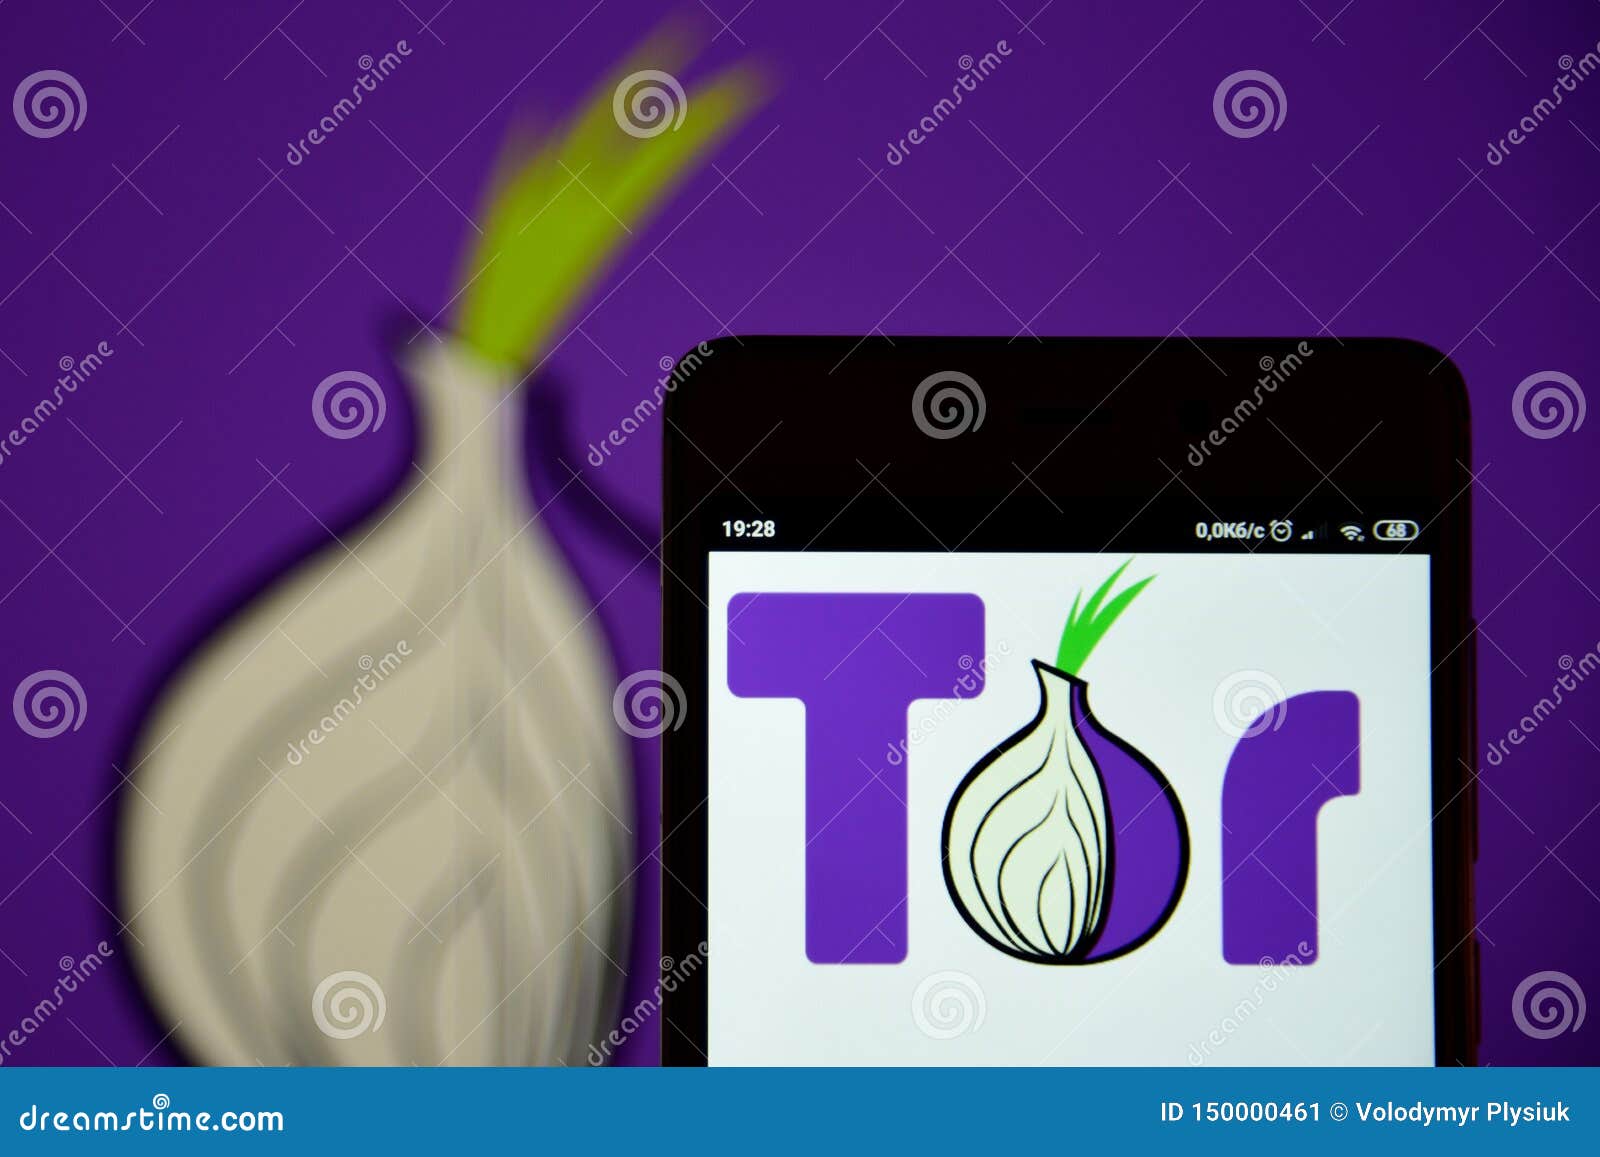 Тор браузер картинки гирда childs play tor browser